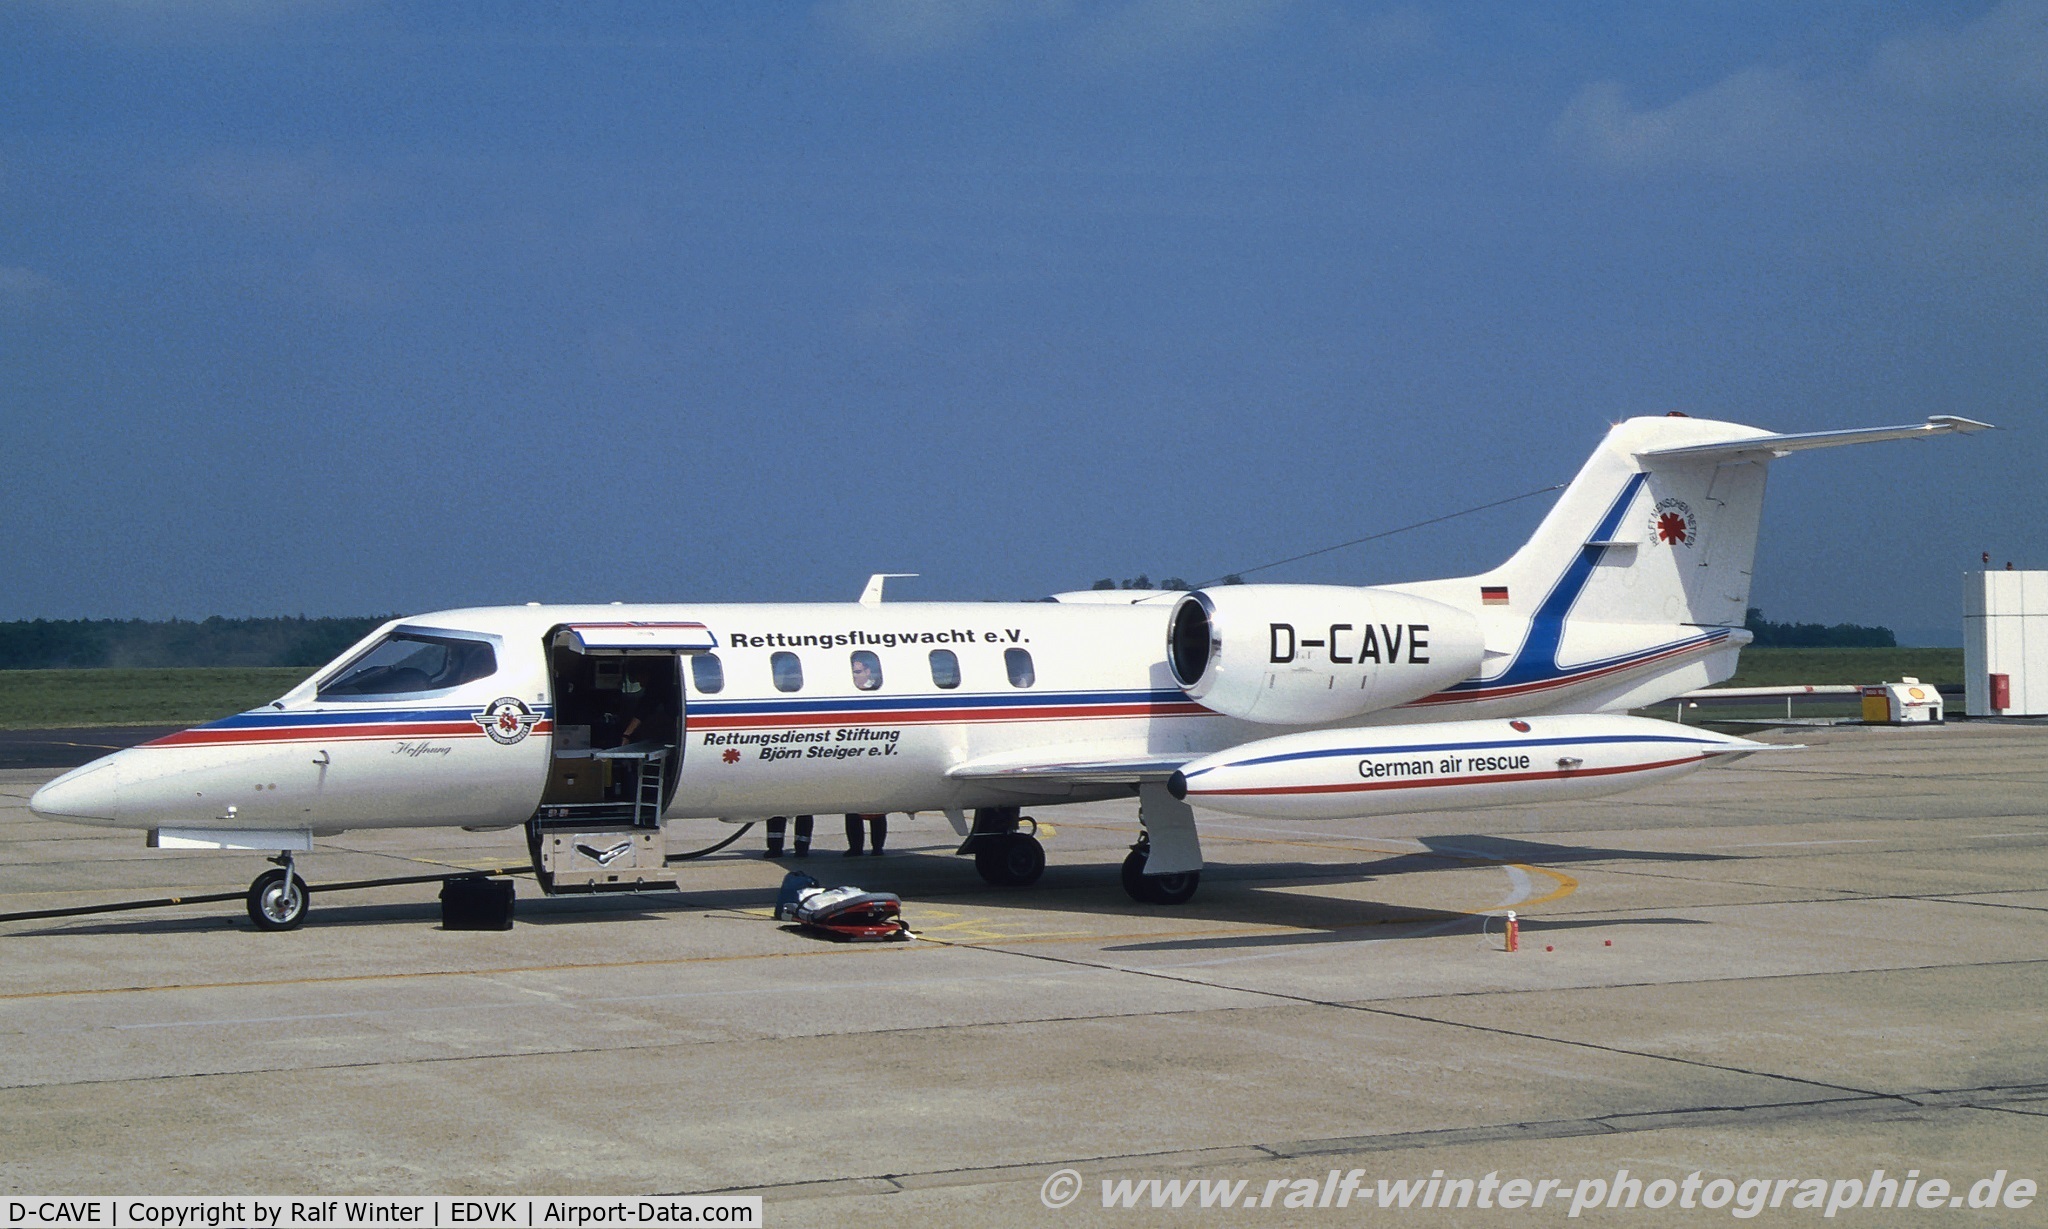 D-CAVE, 1982 Gates Learjet 35A C/N 35A-423, Gates Learjet 35A - 1l AMB Deutsche Rettungsflugwacht DRF scrapped 06.2013 - 35-423 - D-CAVE - EDVK - 1997